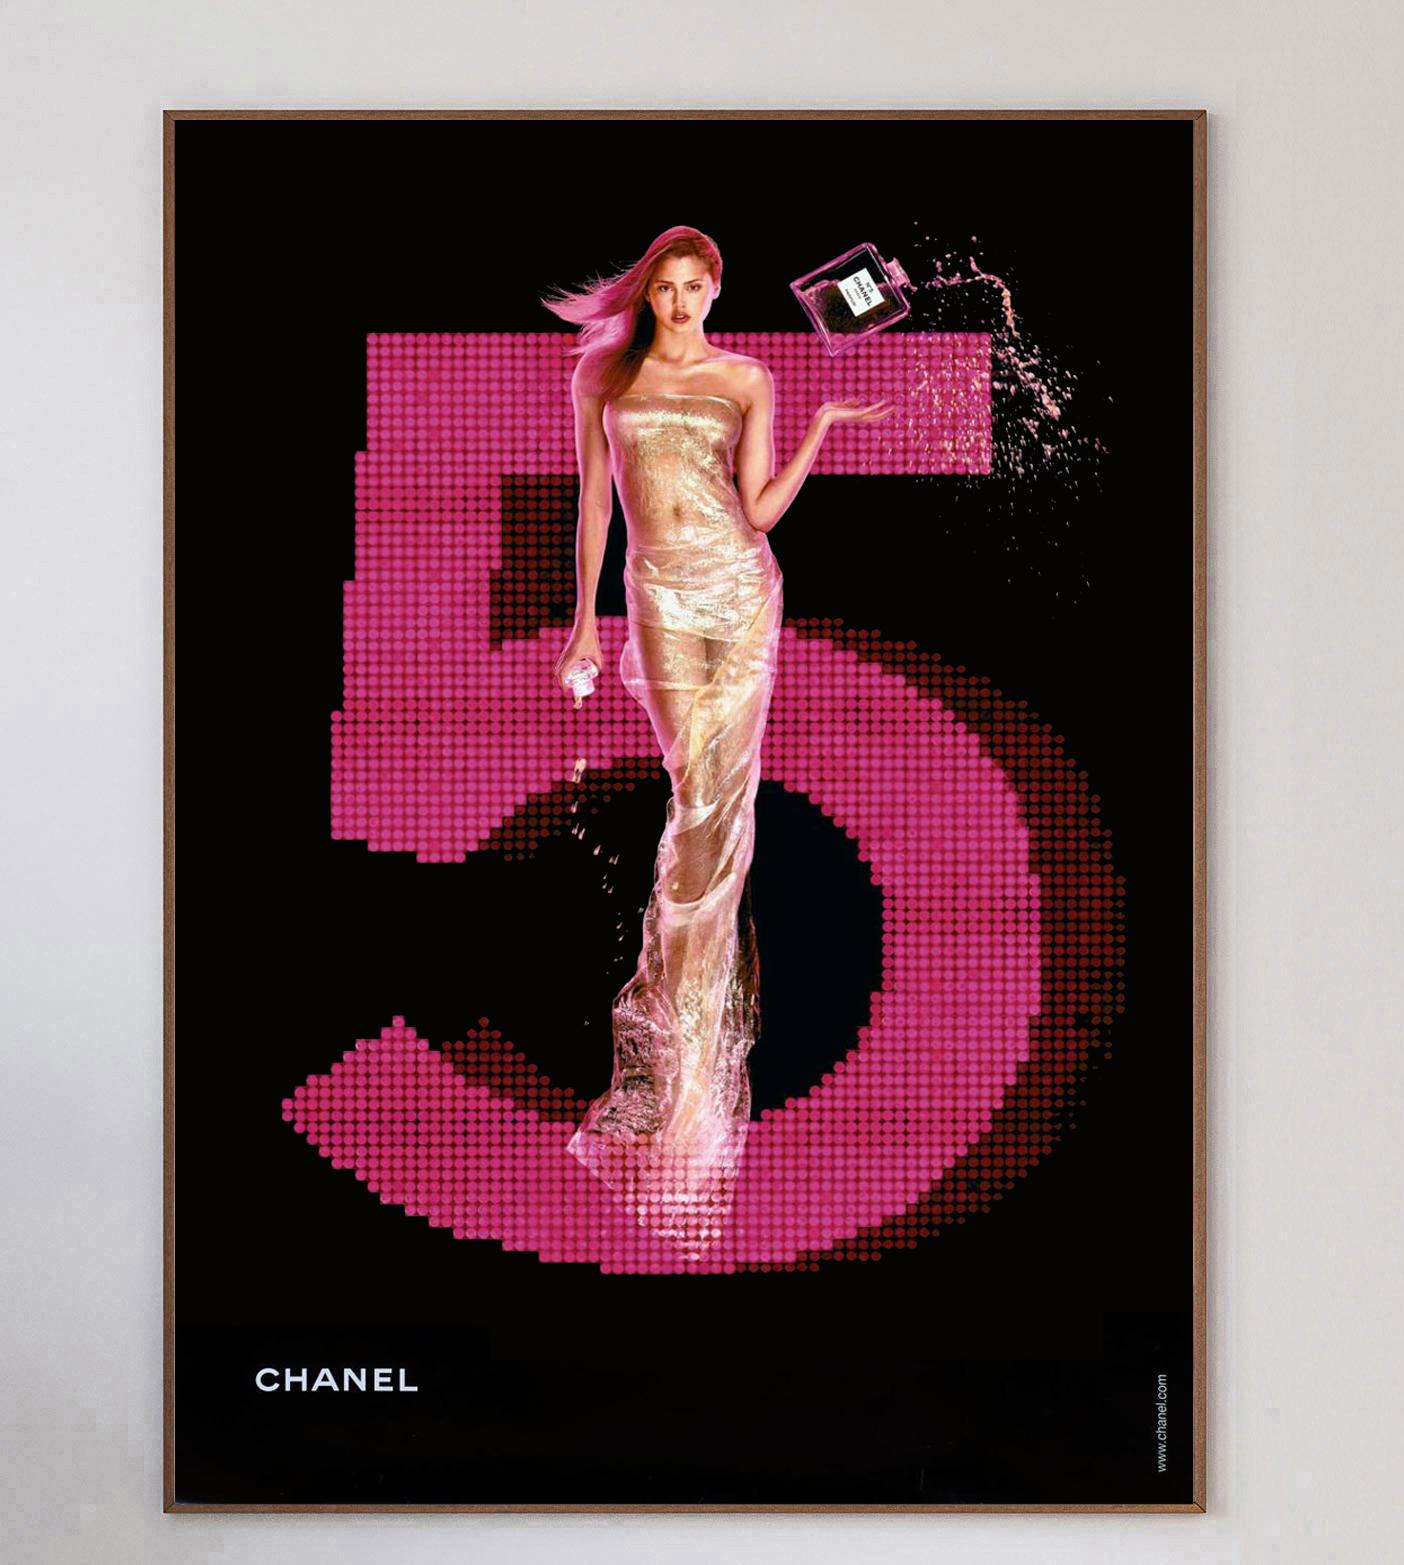 Affiche extra-large faisant la promotion de l'emblématique parfum Chanel No.5. Le parfum a été lancé pour la première fois en 1921 et continue d'être l'un des plus populaires au monde aujourd'hui. Cette superbe affiche met en scène la mannequin et